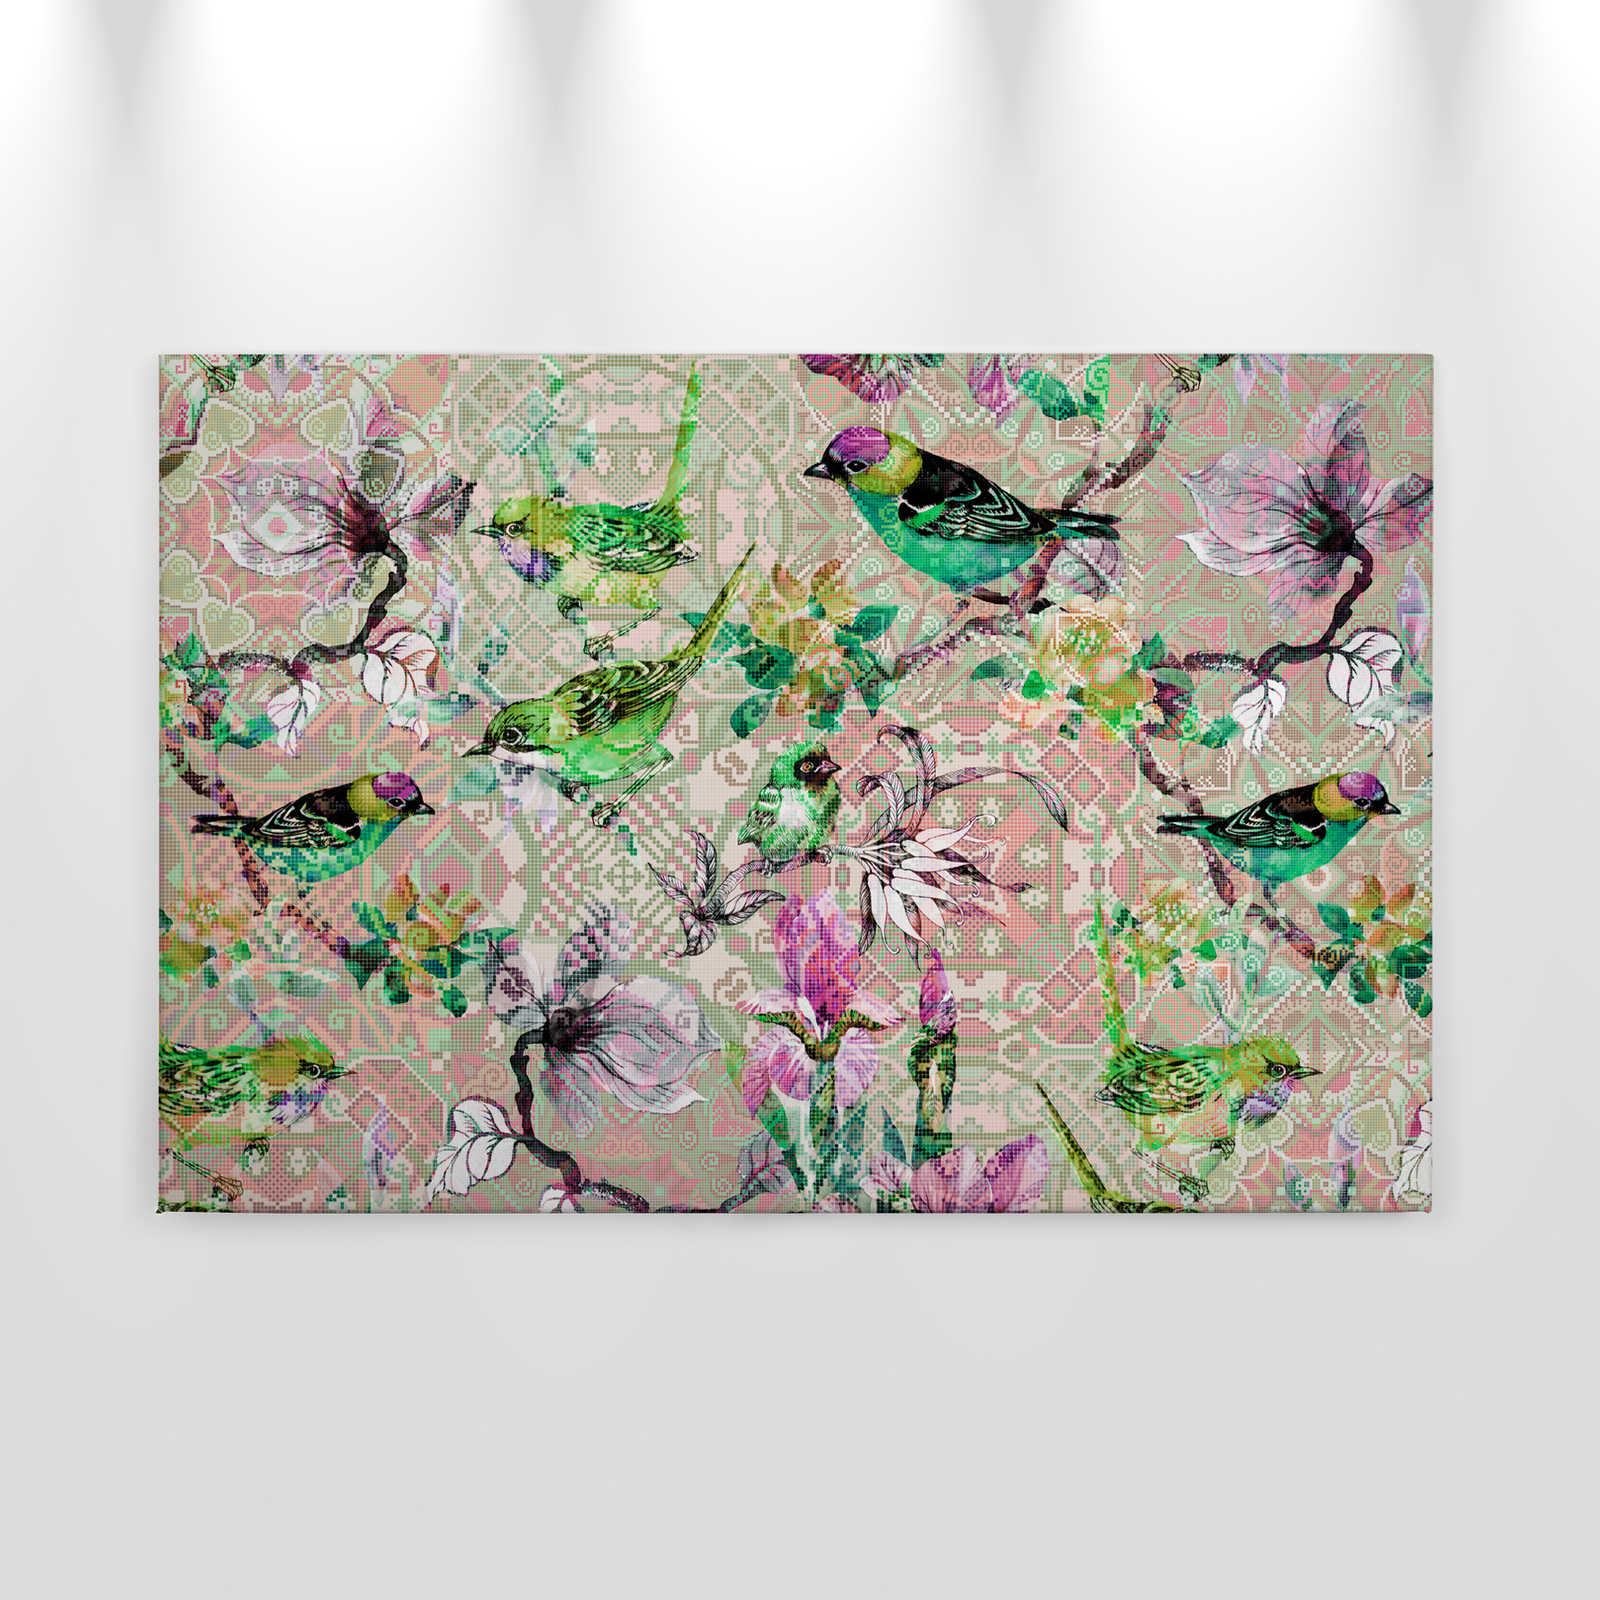             Cuadro lienzo pájaros en mosaico | pájaros en mosaico 2 - 0,90 m x 0,60 m
        